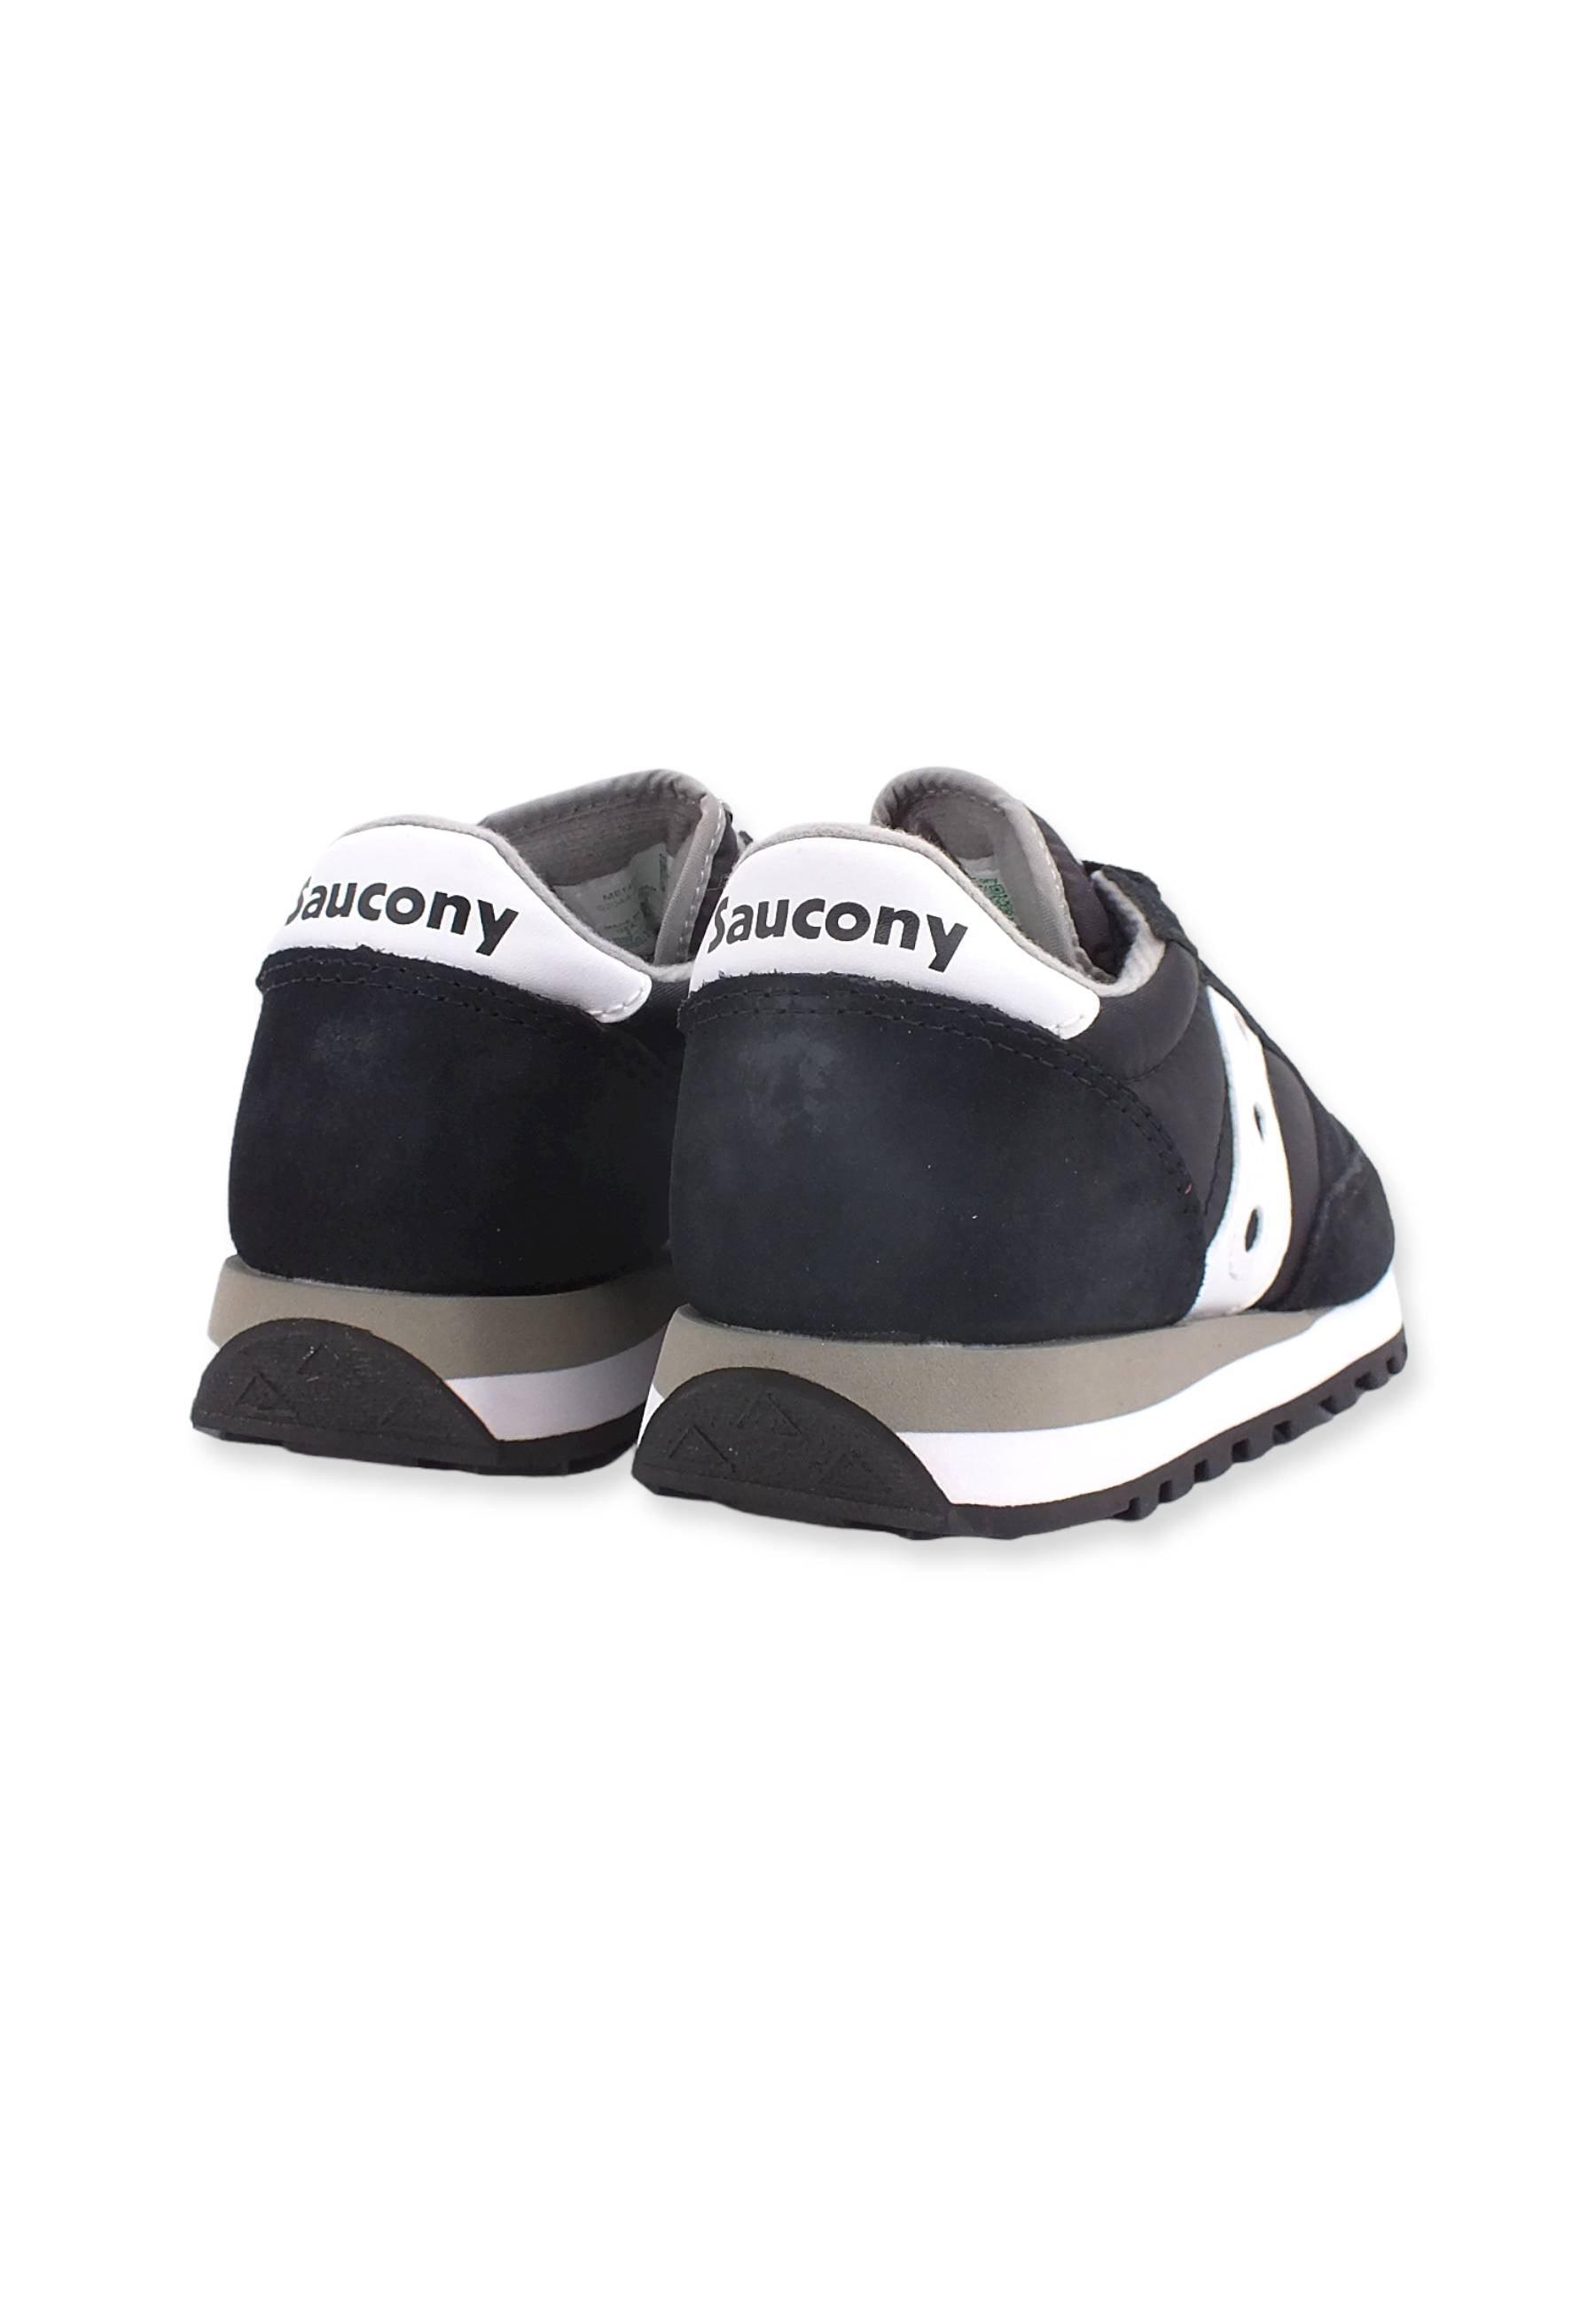 SAUCONY Jazz Original Sneaker Donna Black White S2044-449 - Sandrini Calzature e Abbigliamento